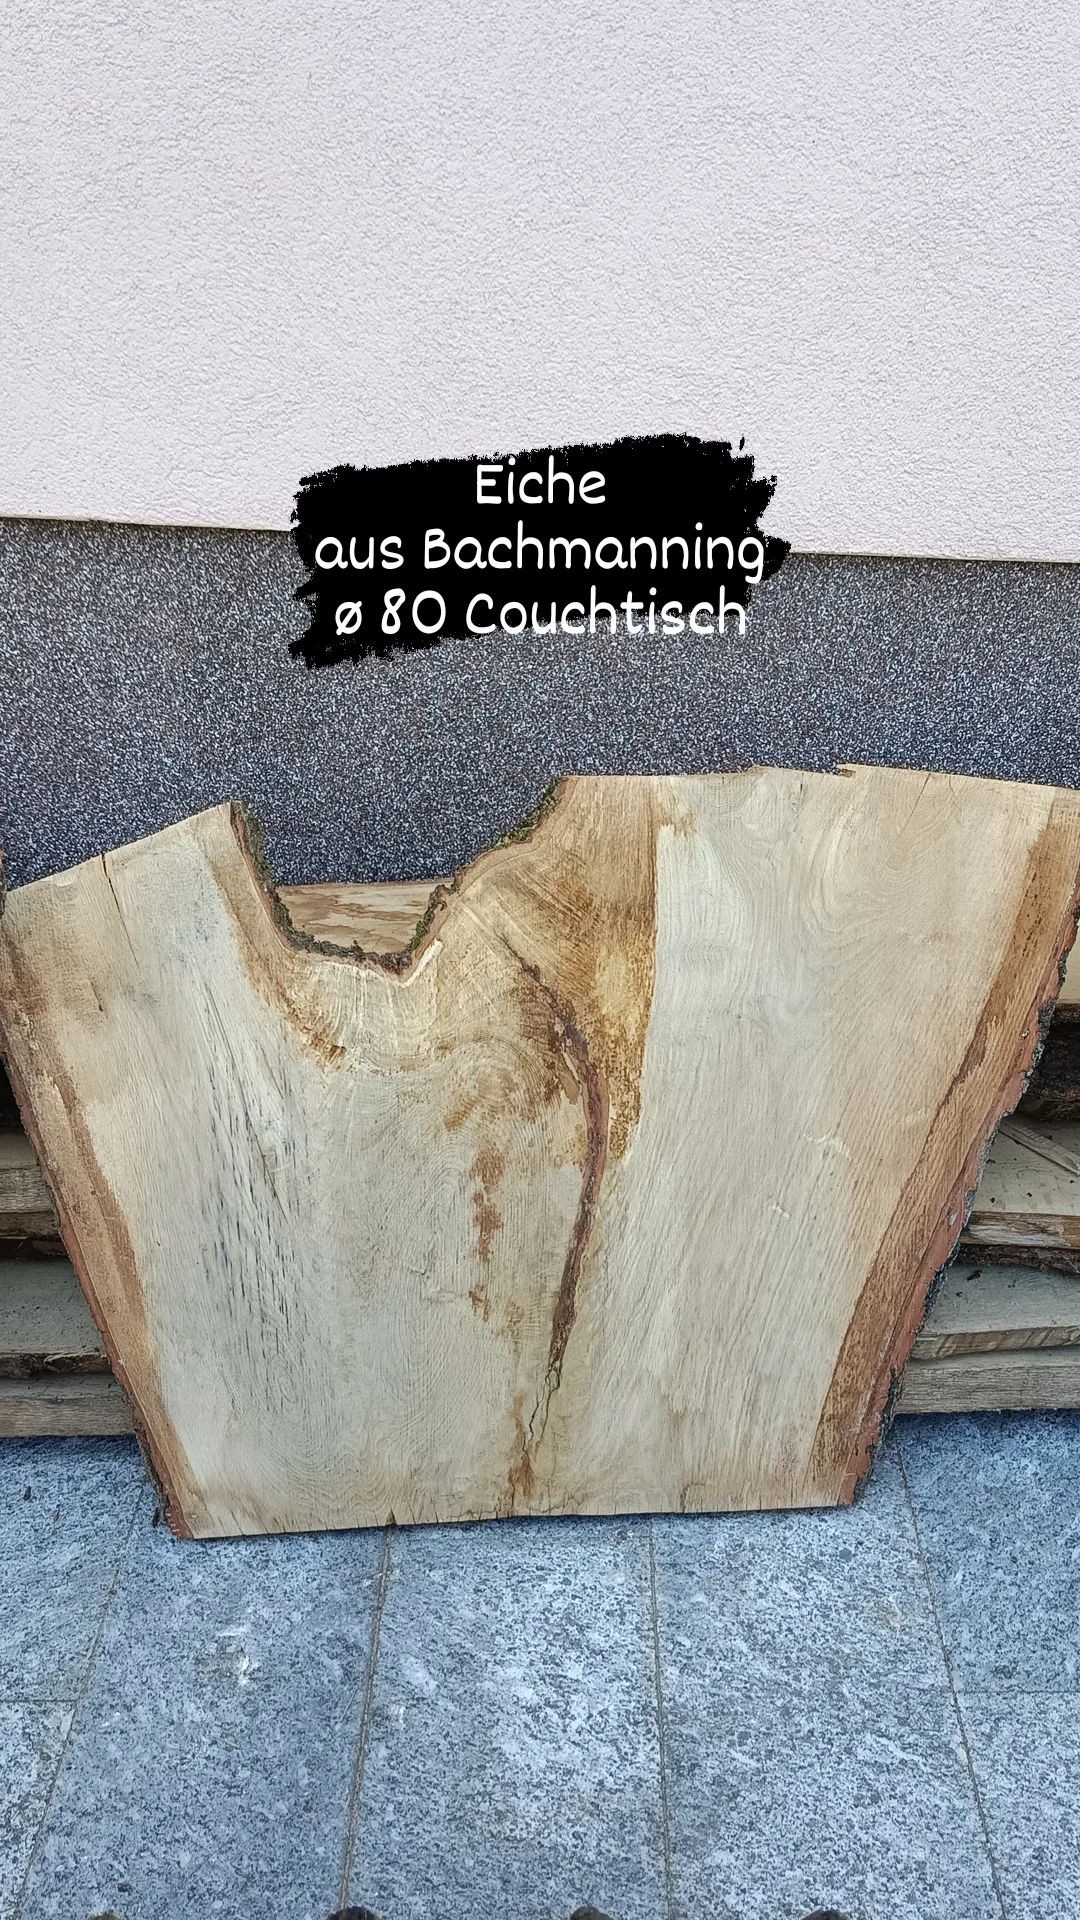 Tischplattenrohling Couchtisch 80cm Eichenholz aus Bachmanning